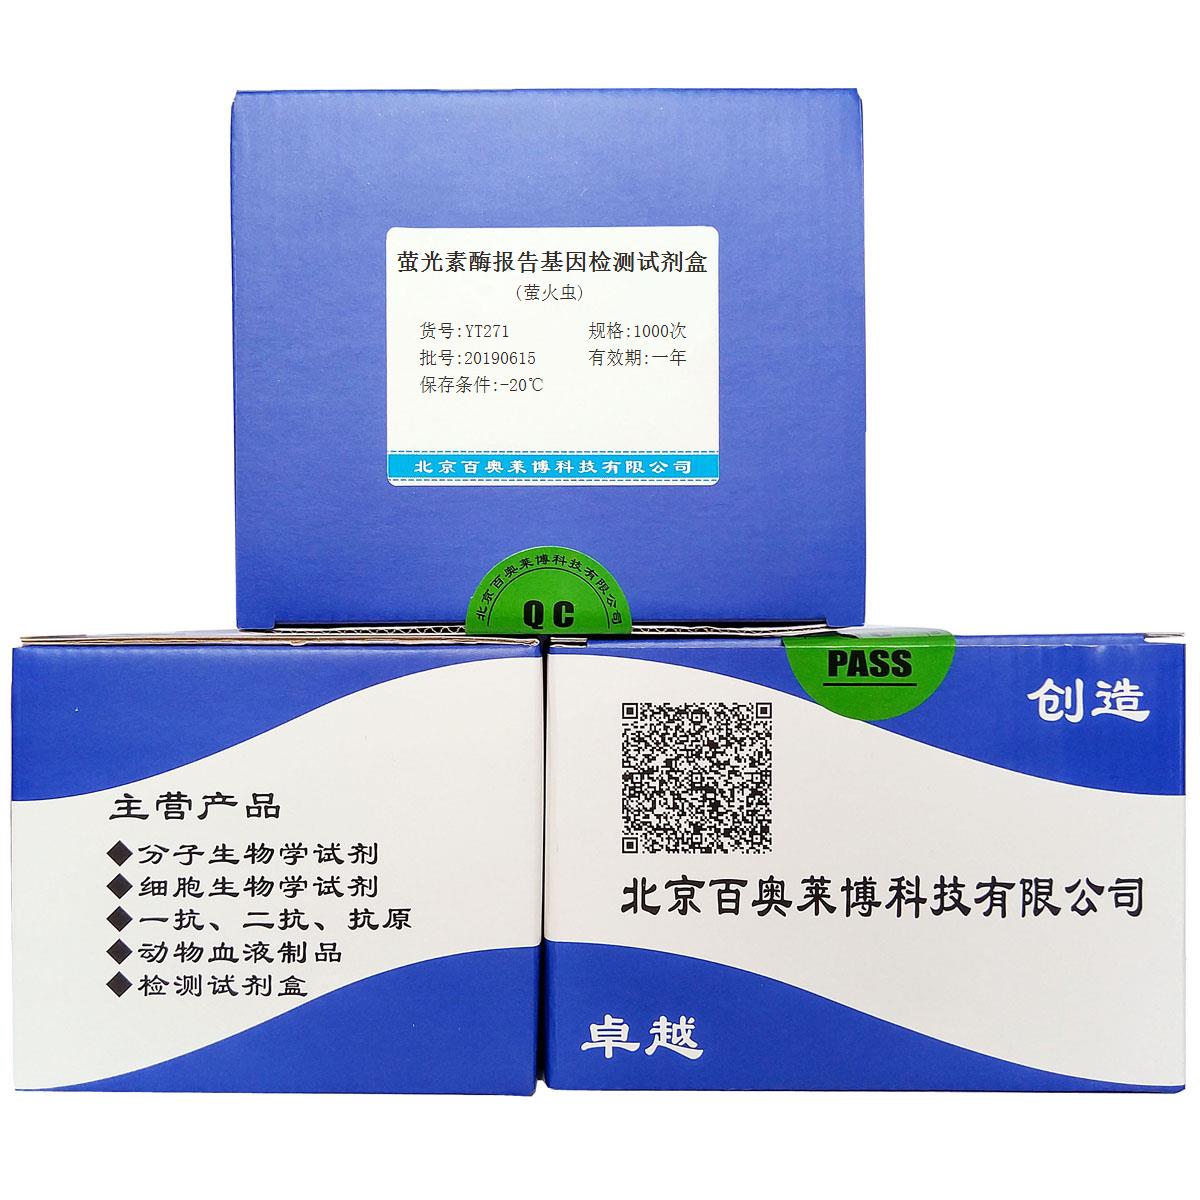 萤光素酶报告基因检测试剂盒(萤火虫)北京厂家